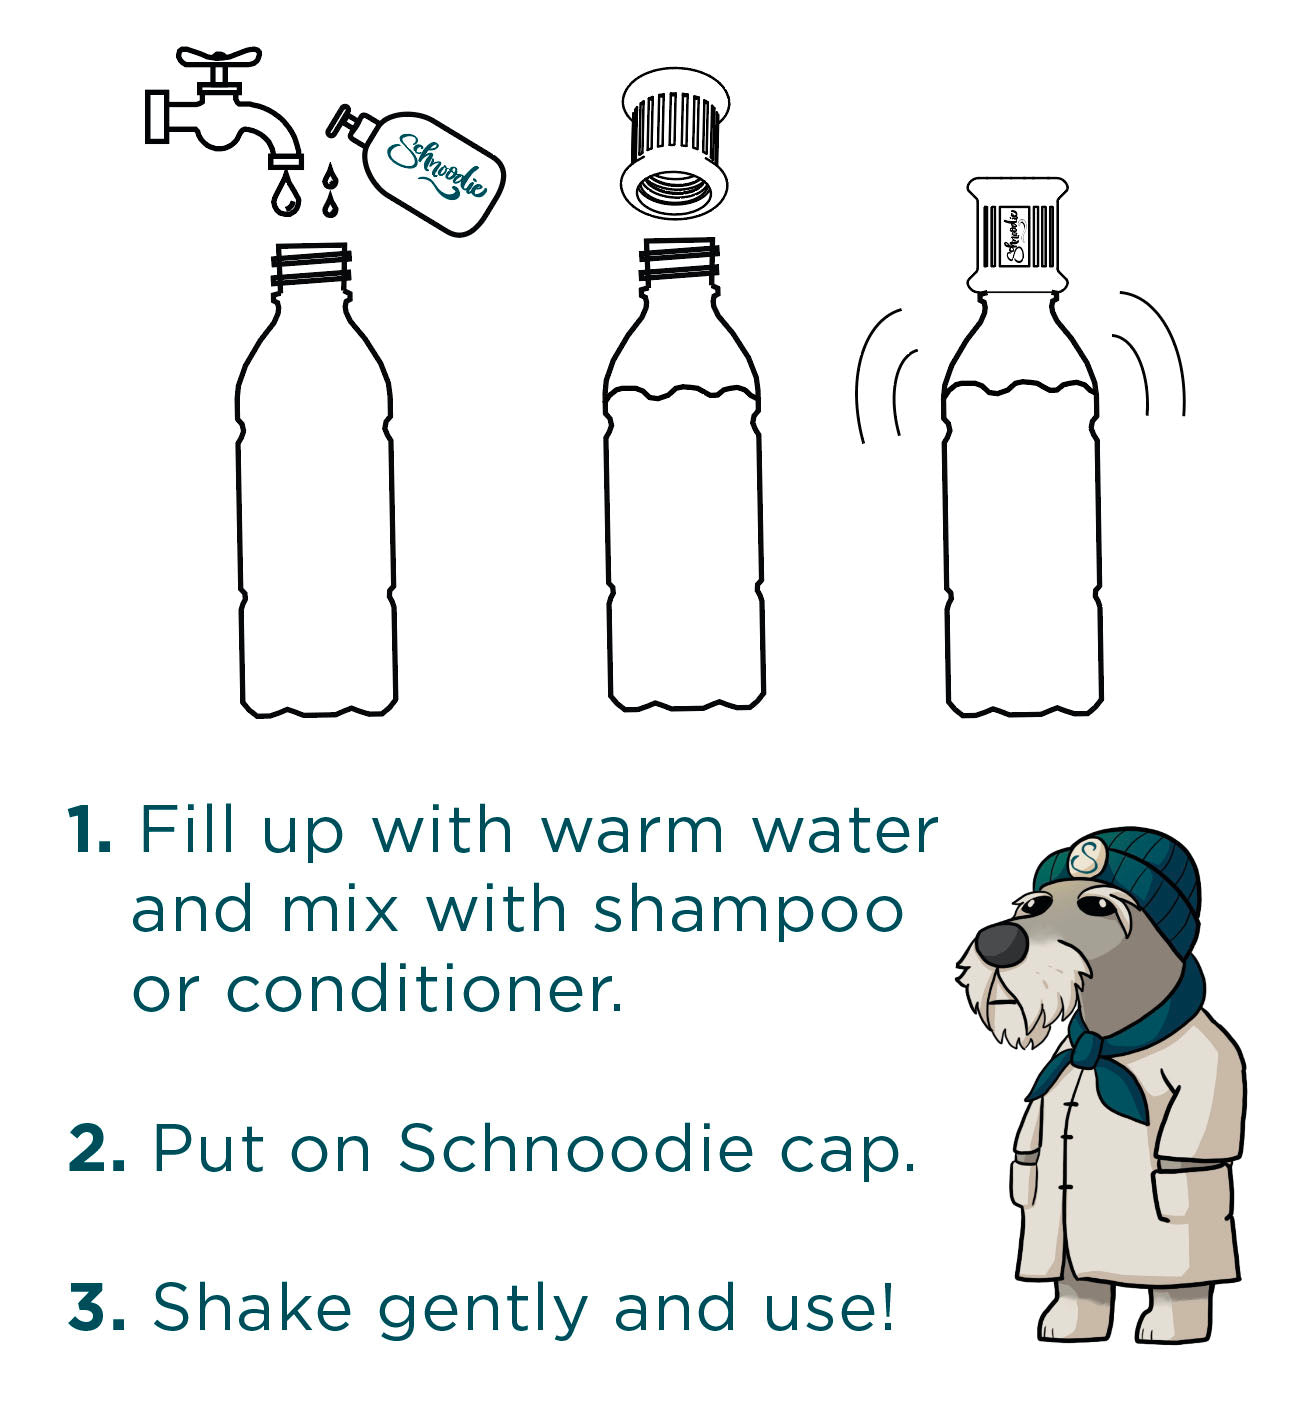 Dog Wash - koncentrerat och oparfymerat schampo